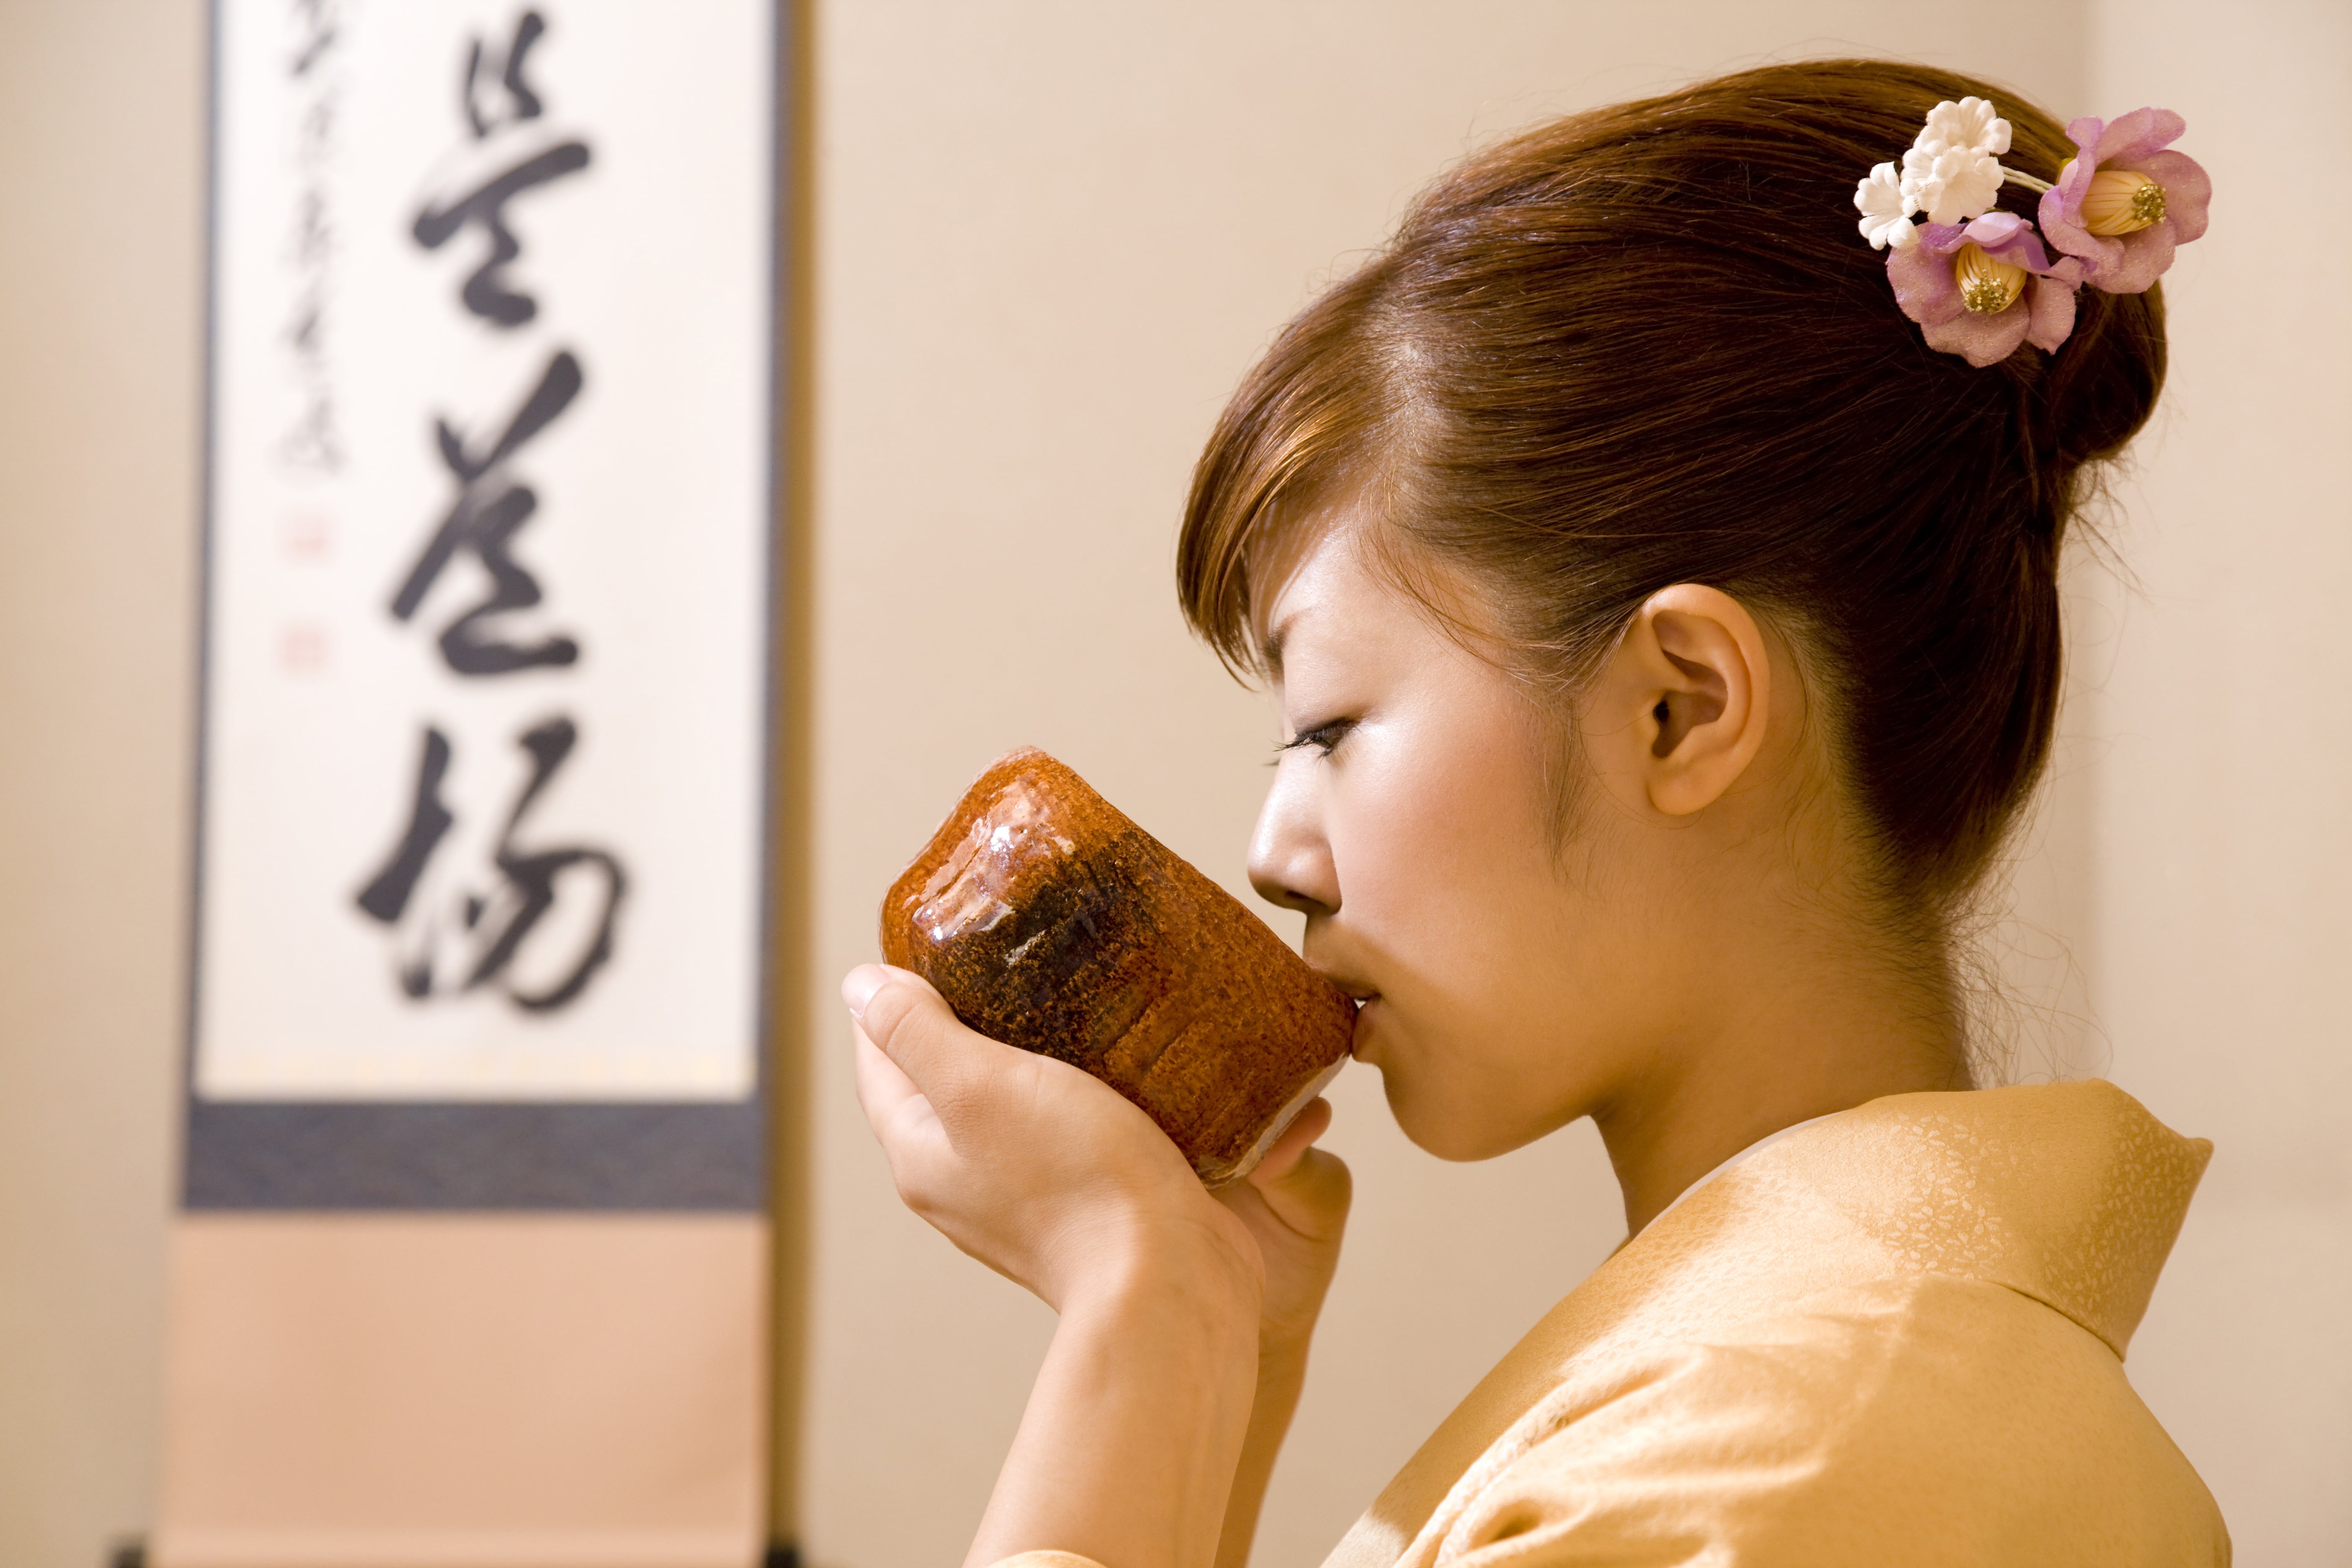 魅力あふれる日本文化 茶道とは 正しい作法やおもてなしの心を学ぼう にほんご日和